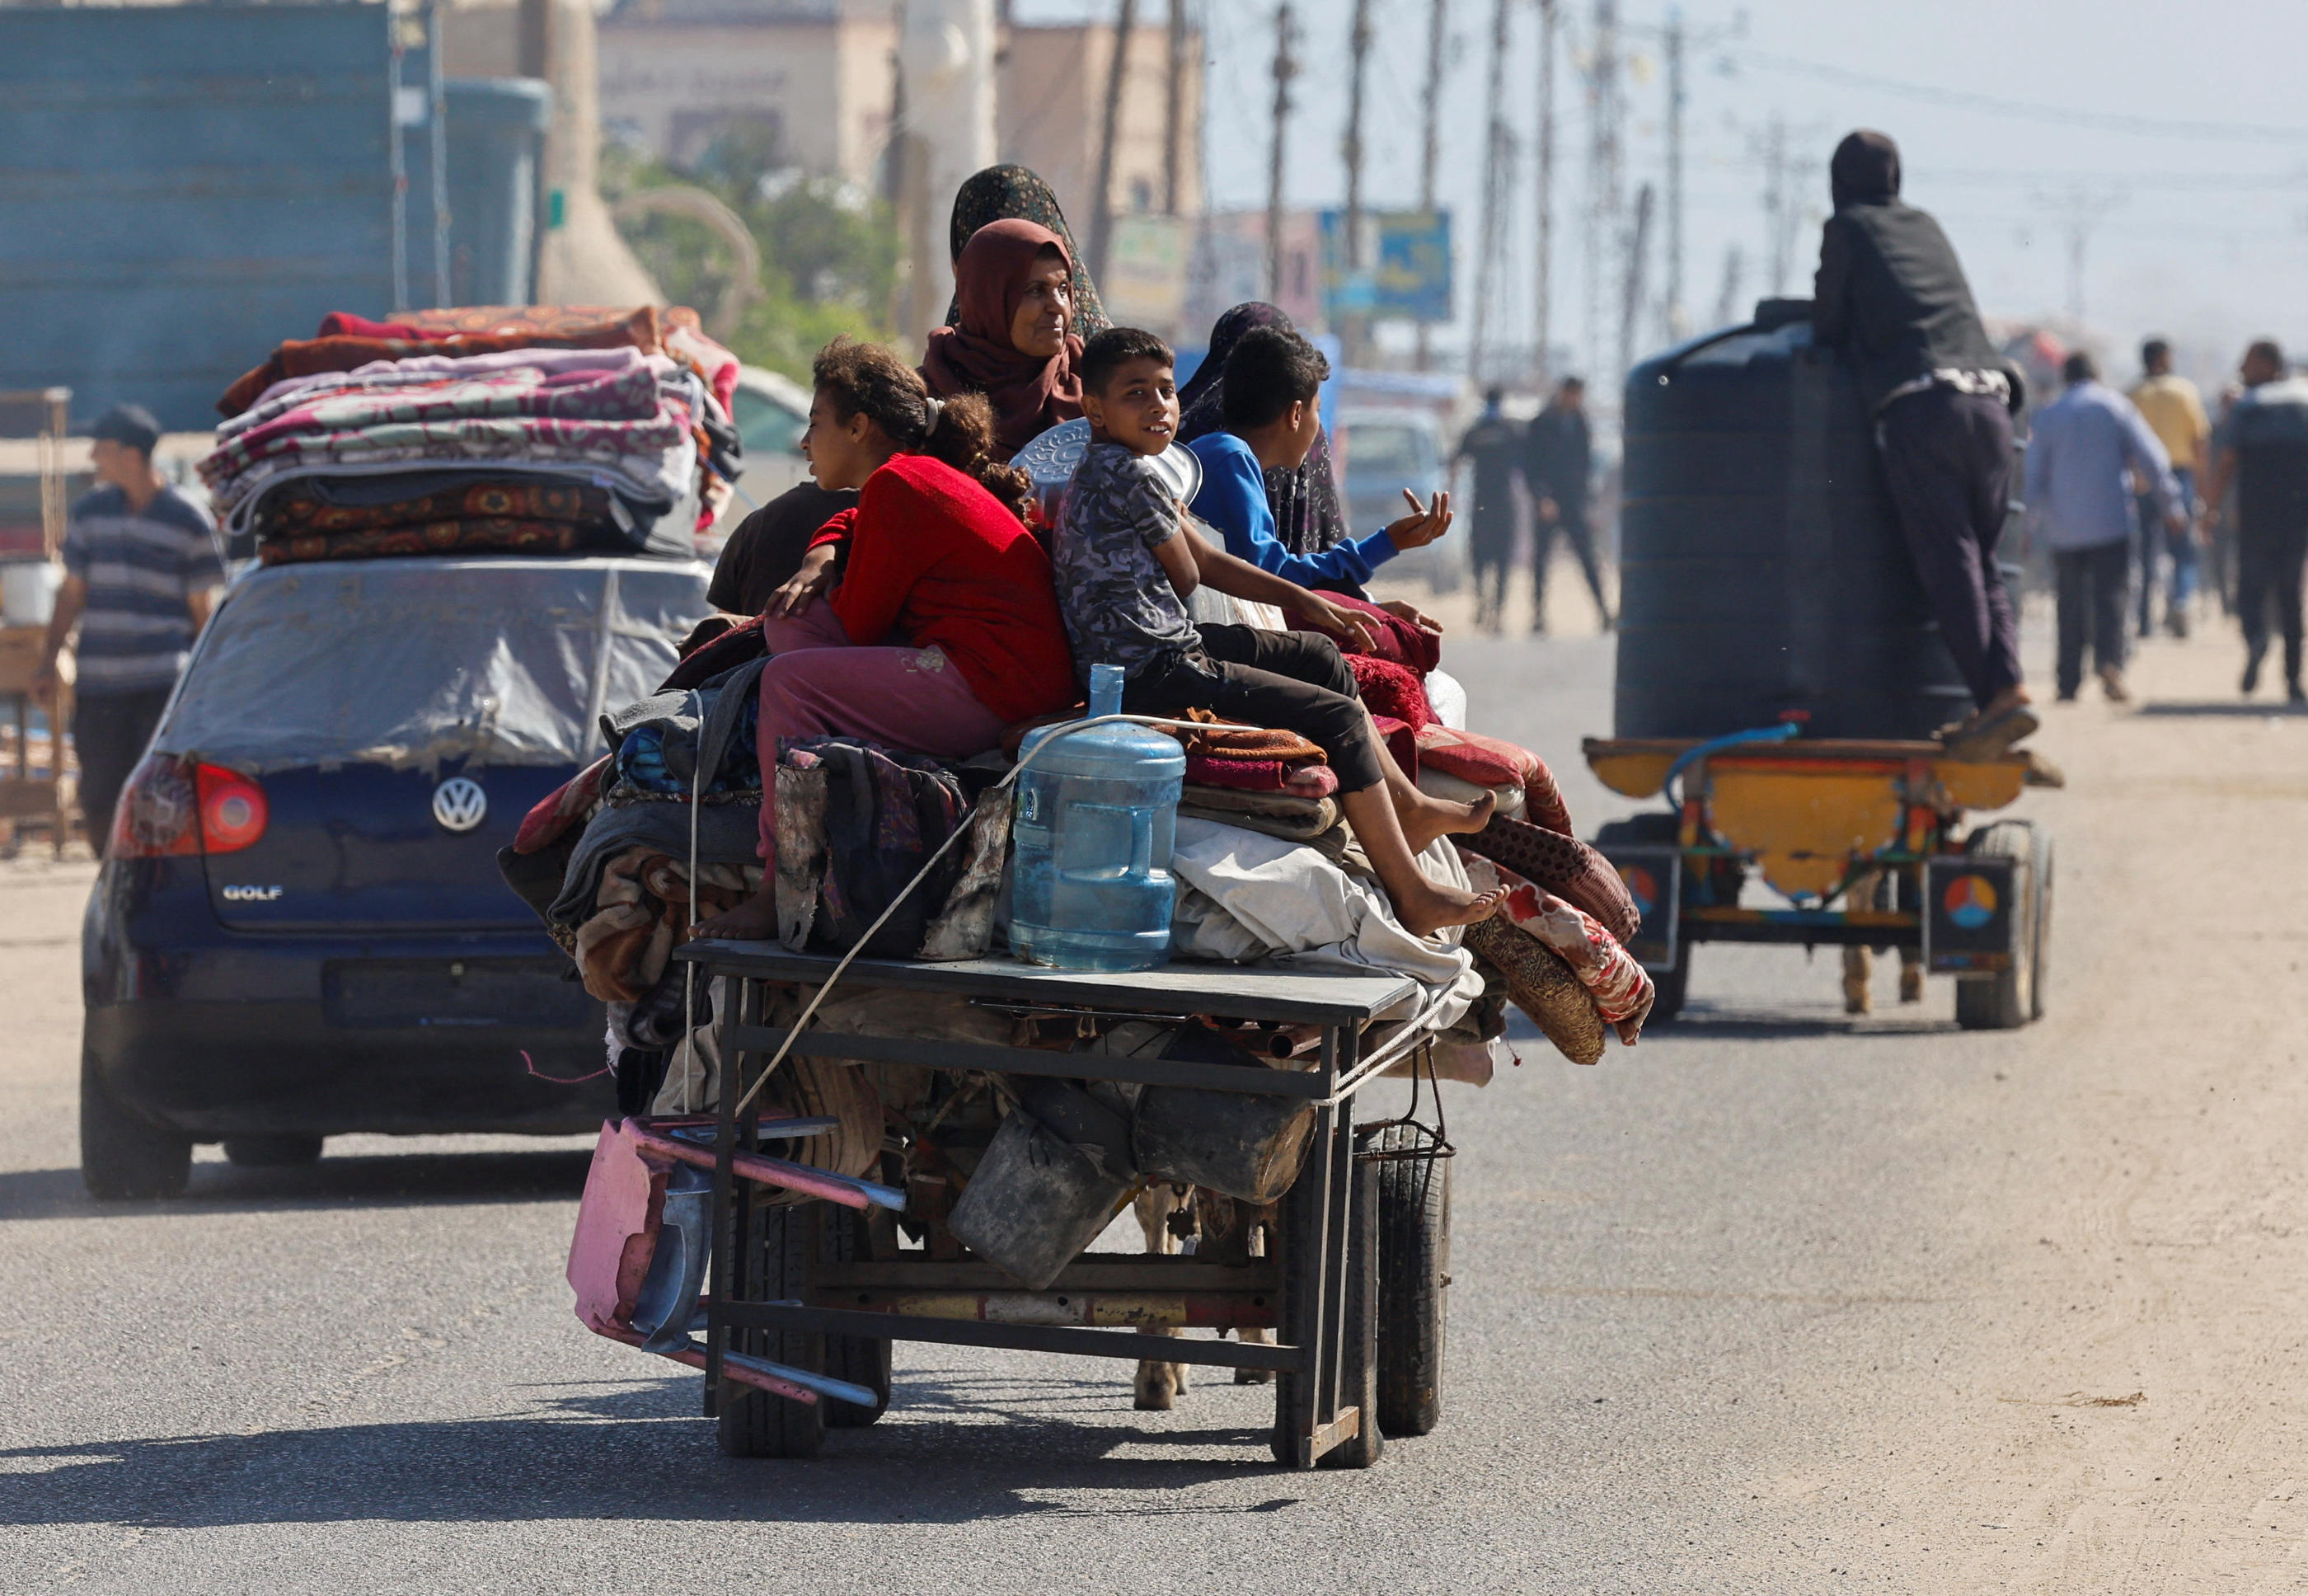 Plus de 100 000 personnes ont fui Rafah en quatre jours, alors qu'une offensive israélienne menace la ville. REUTERS/Mohammed Salem